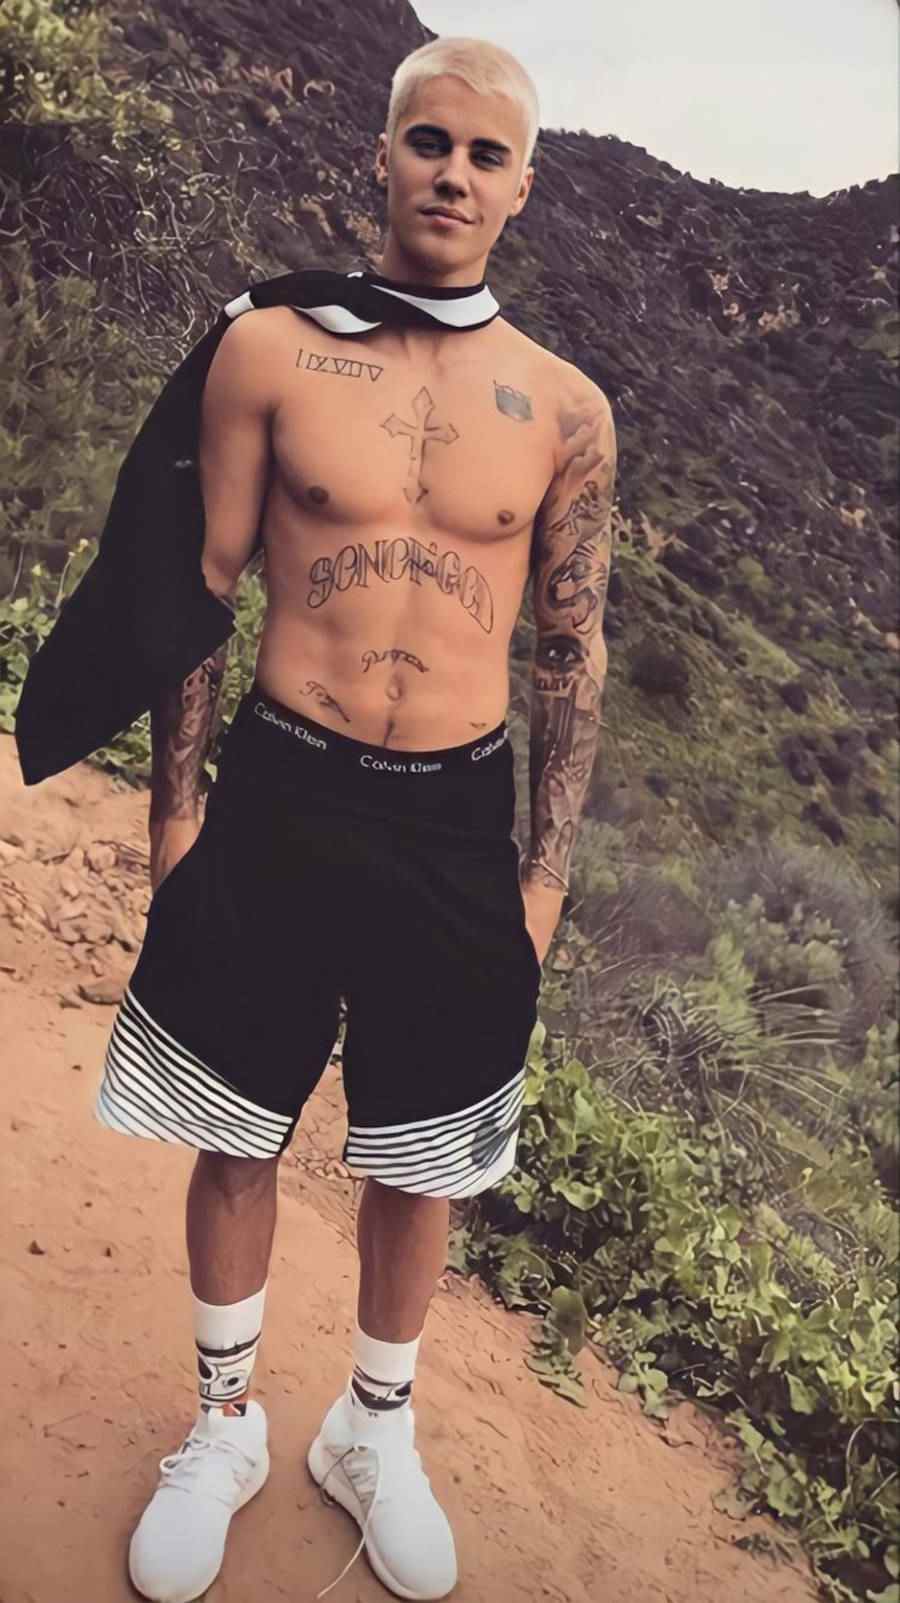 Foto de Justin Bieber no alto de uma colina e o destque é a sua tatuagem "Son of God"